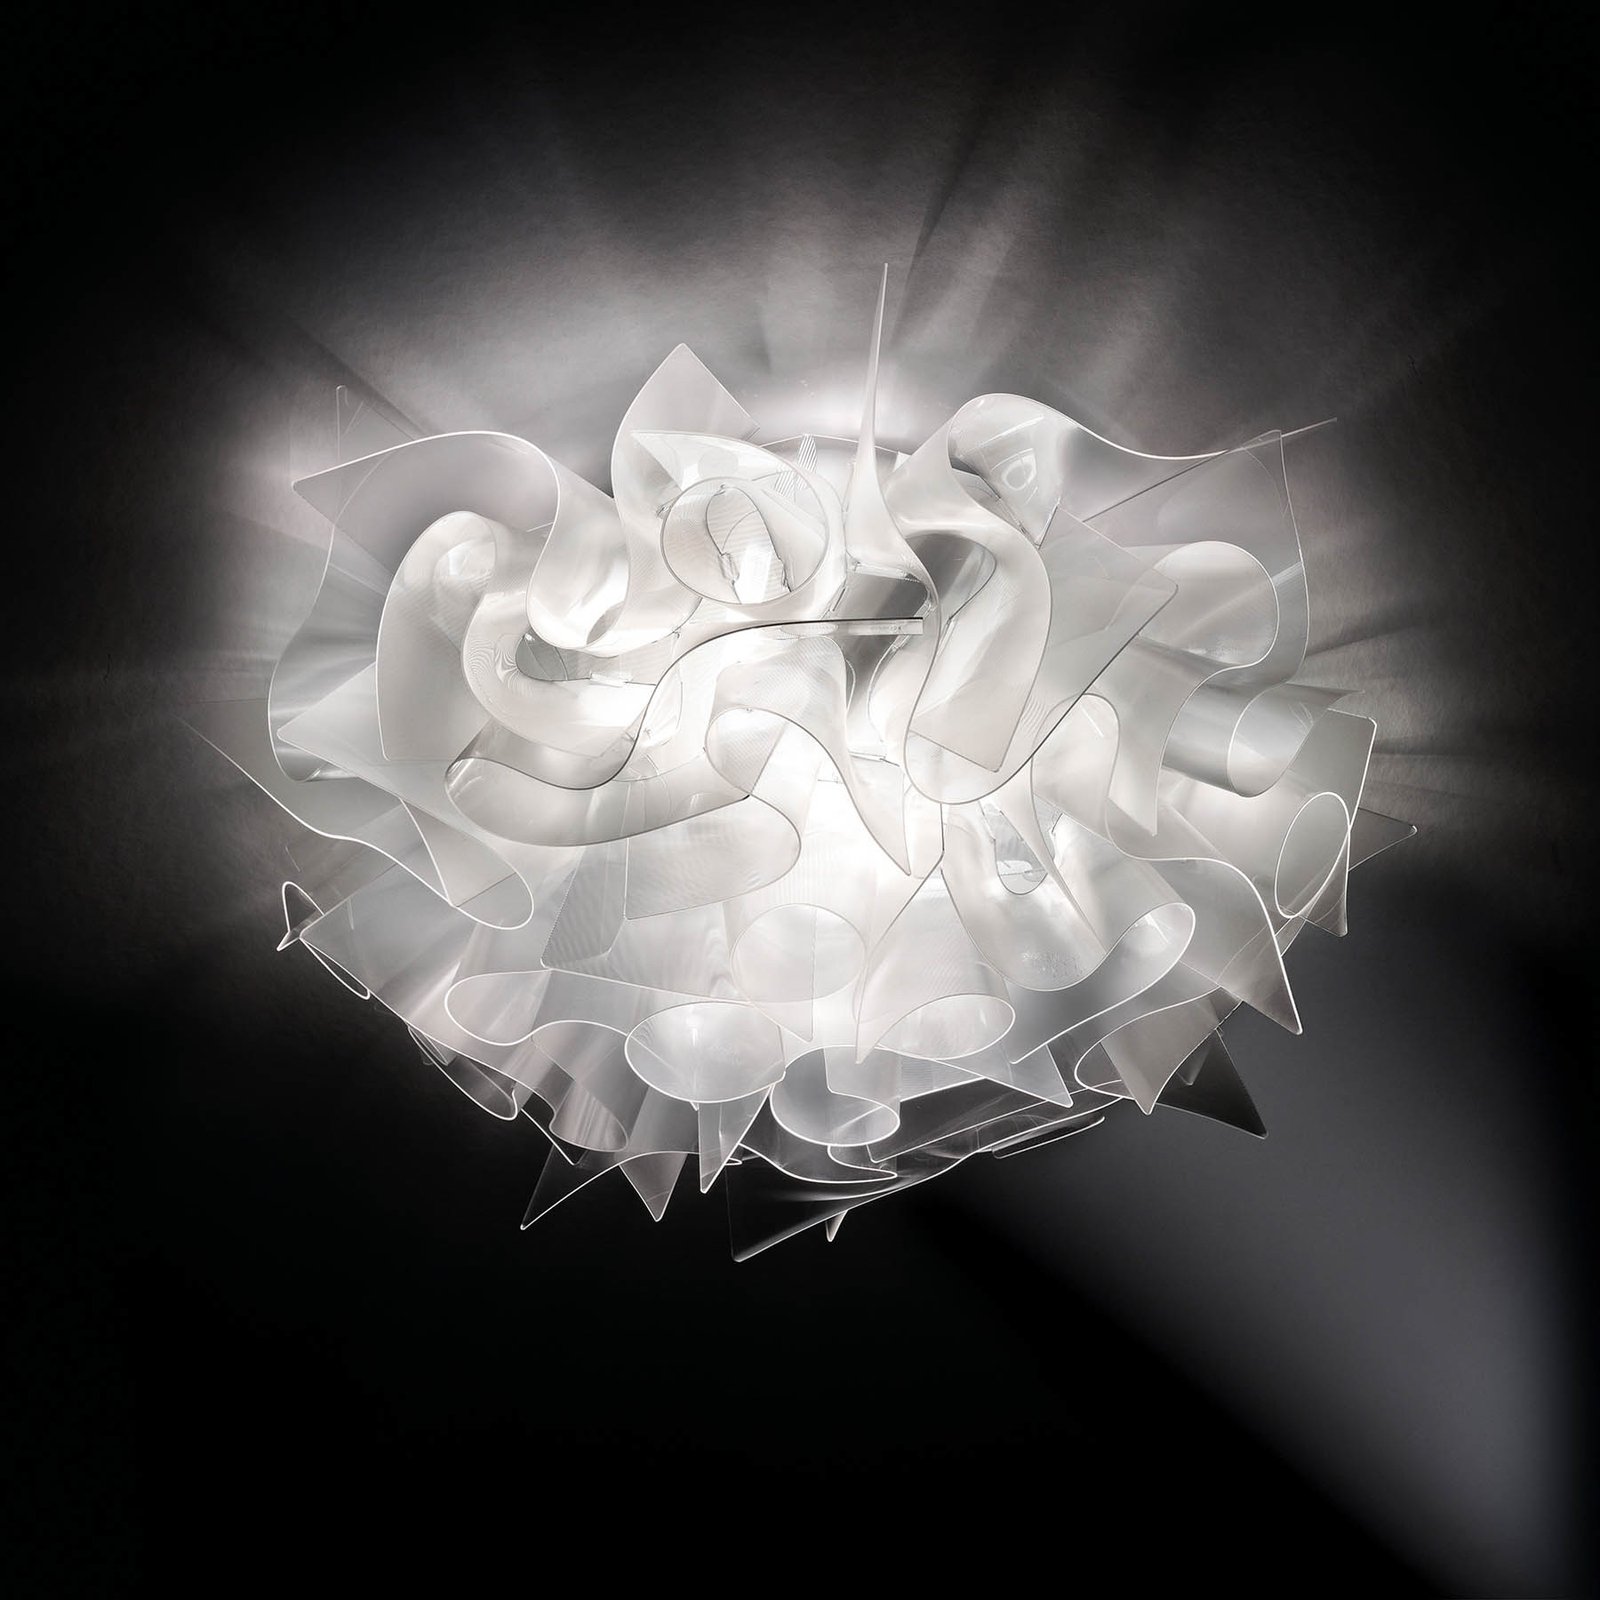 Slamp Veli Prisma, dizajnová stropná lampa Ø 53 cm